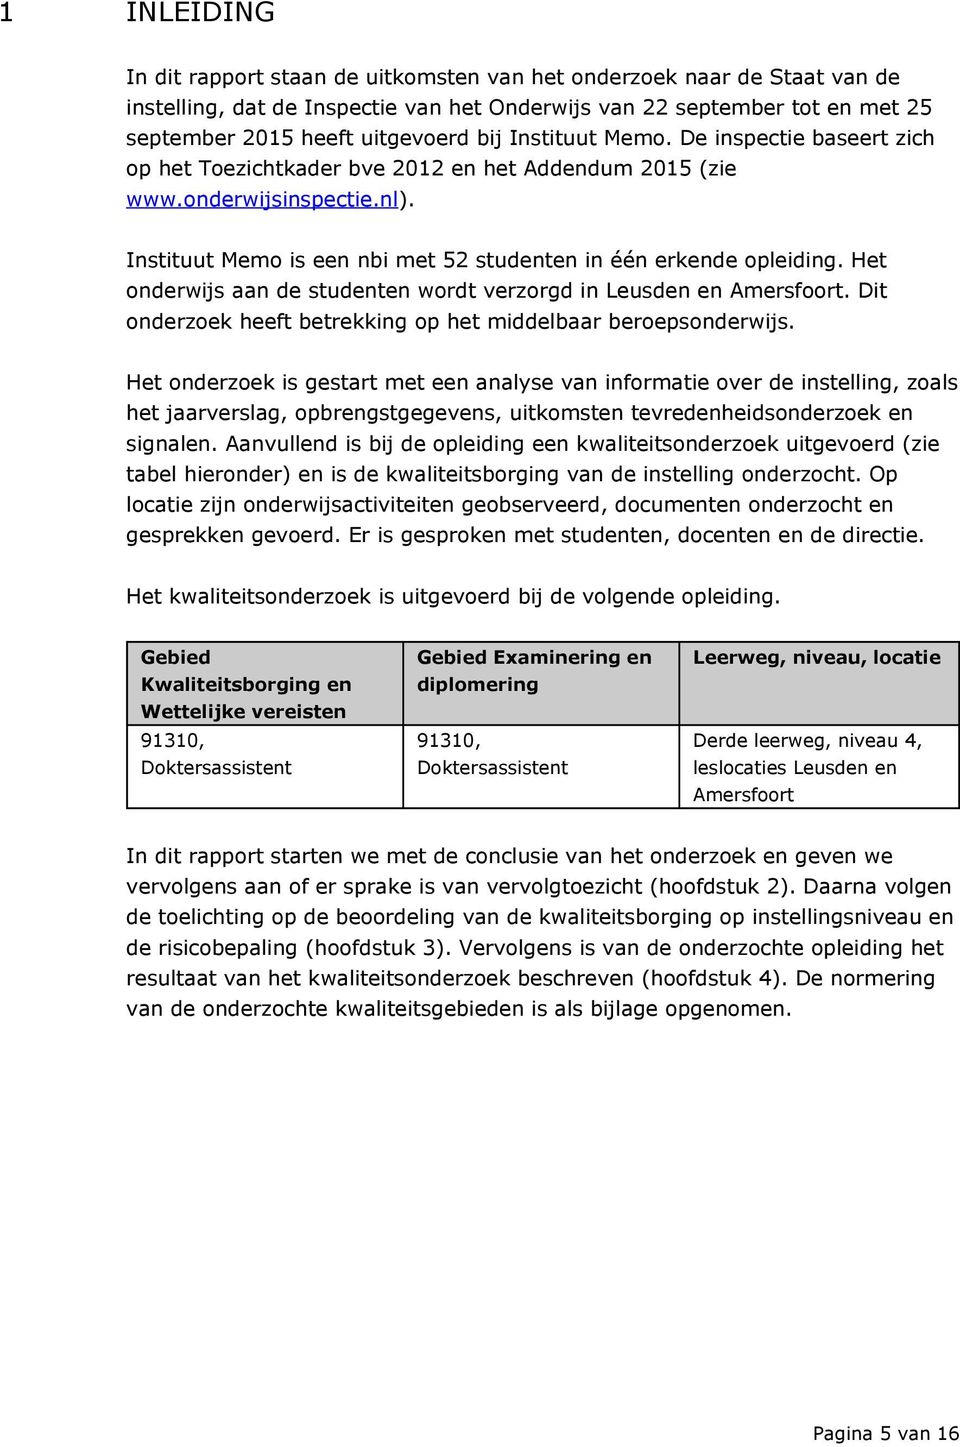 Het onderwijs aan de studenten wordt verzorgd in Leusden en Amersfoort. Dit onderzoek heeft betrekking op het middelbaar beroepsonderwijs.